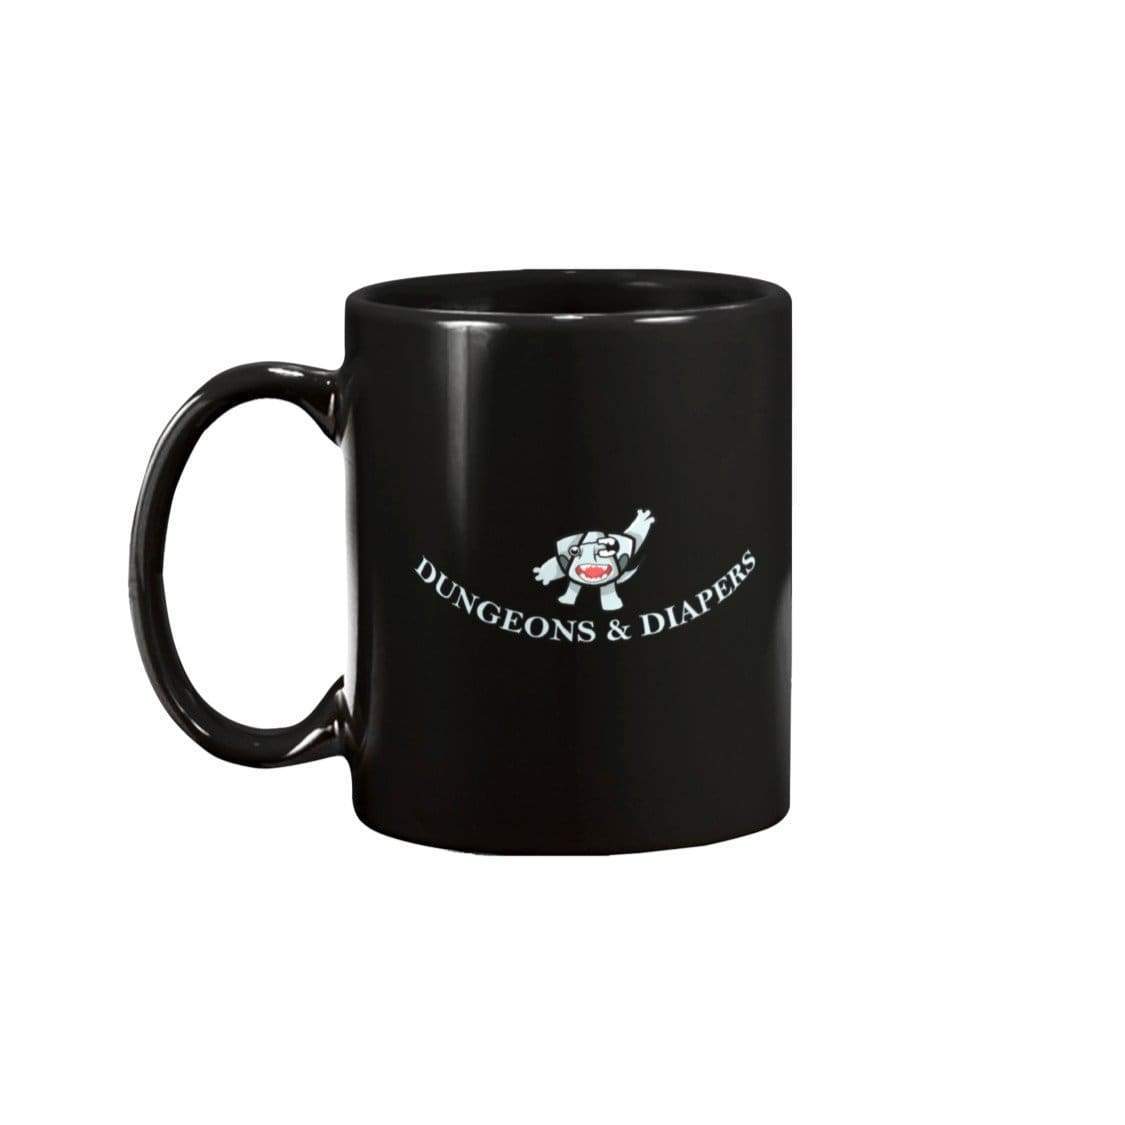 Dungeons & Diapers 11oz Coffee Mug - Black / 11OZ - Mugs